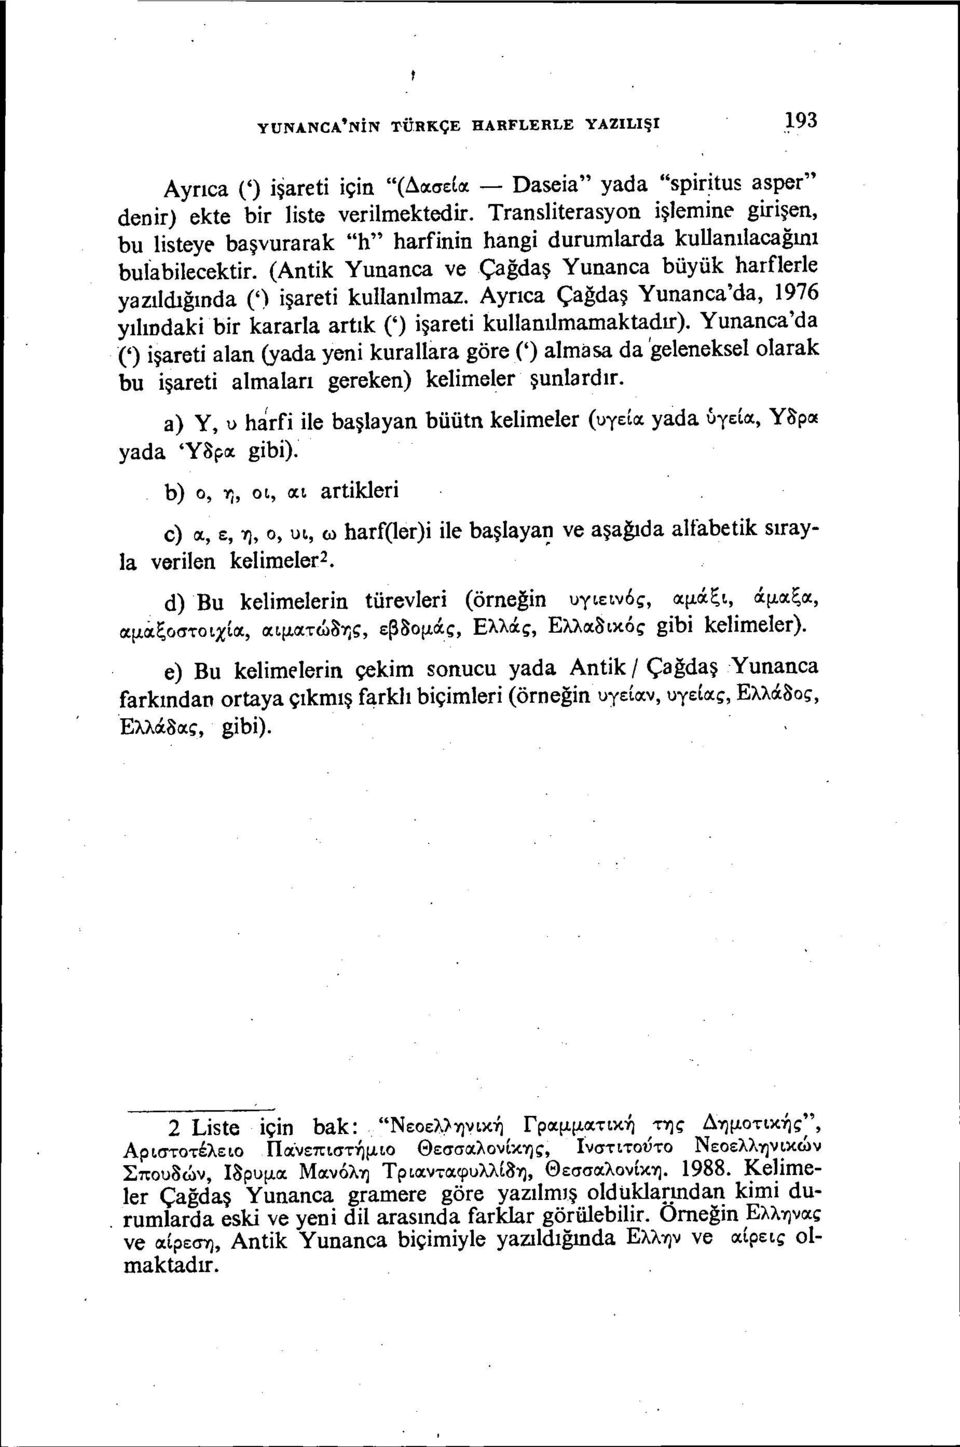 Ayrıca Çağdaş Yunanca'da, 1976 yılındakbr kararla artık (') şaret kullanılmamaktadır).